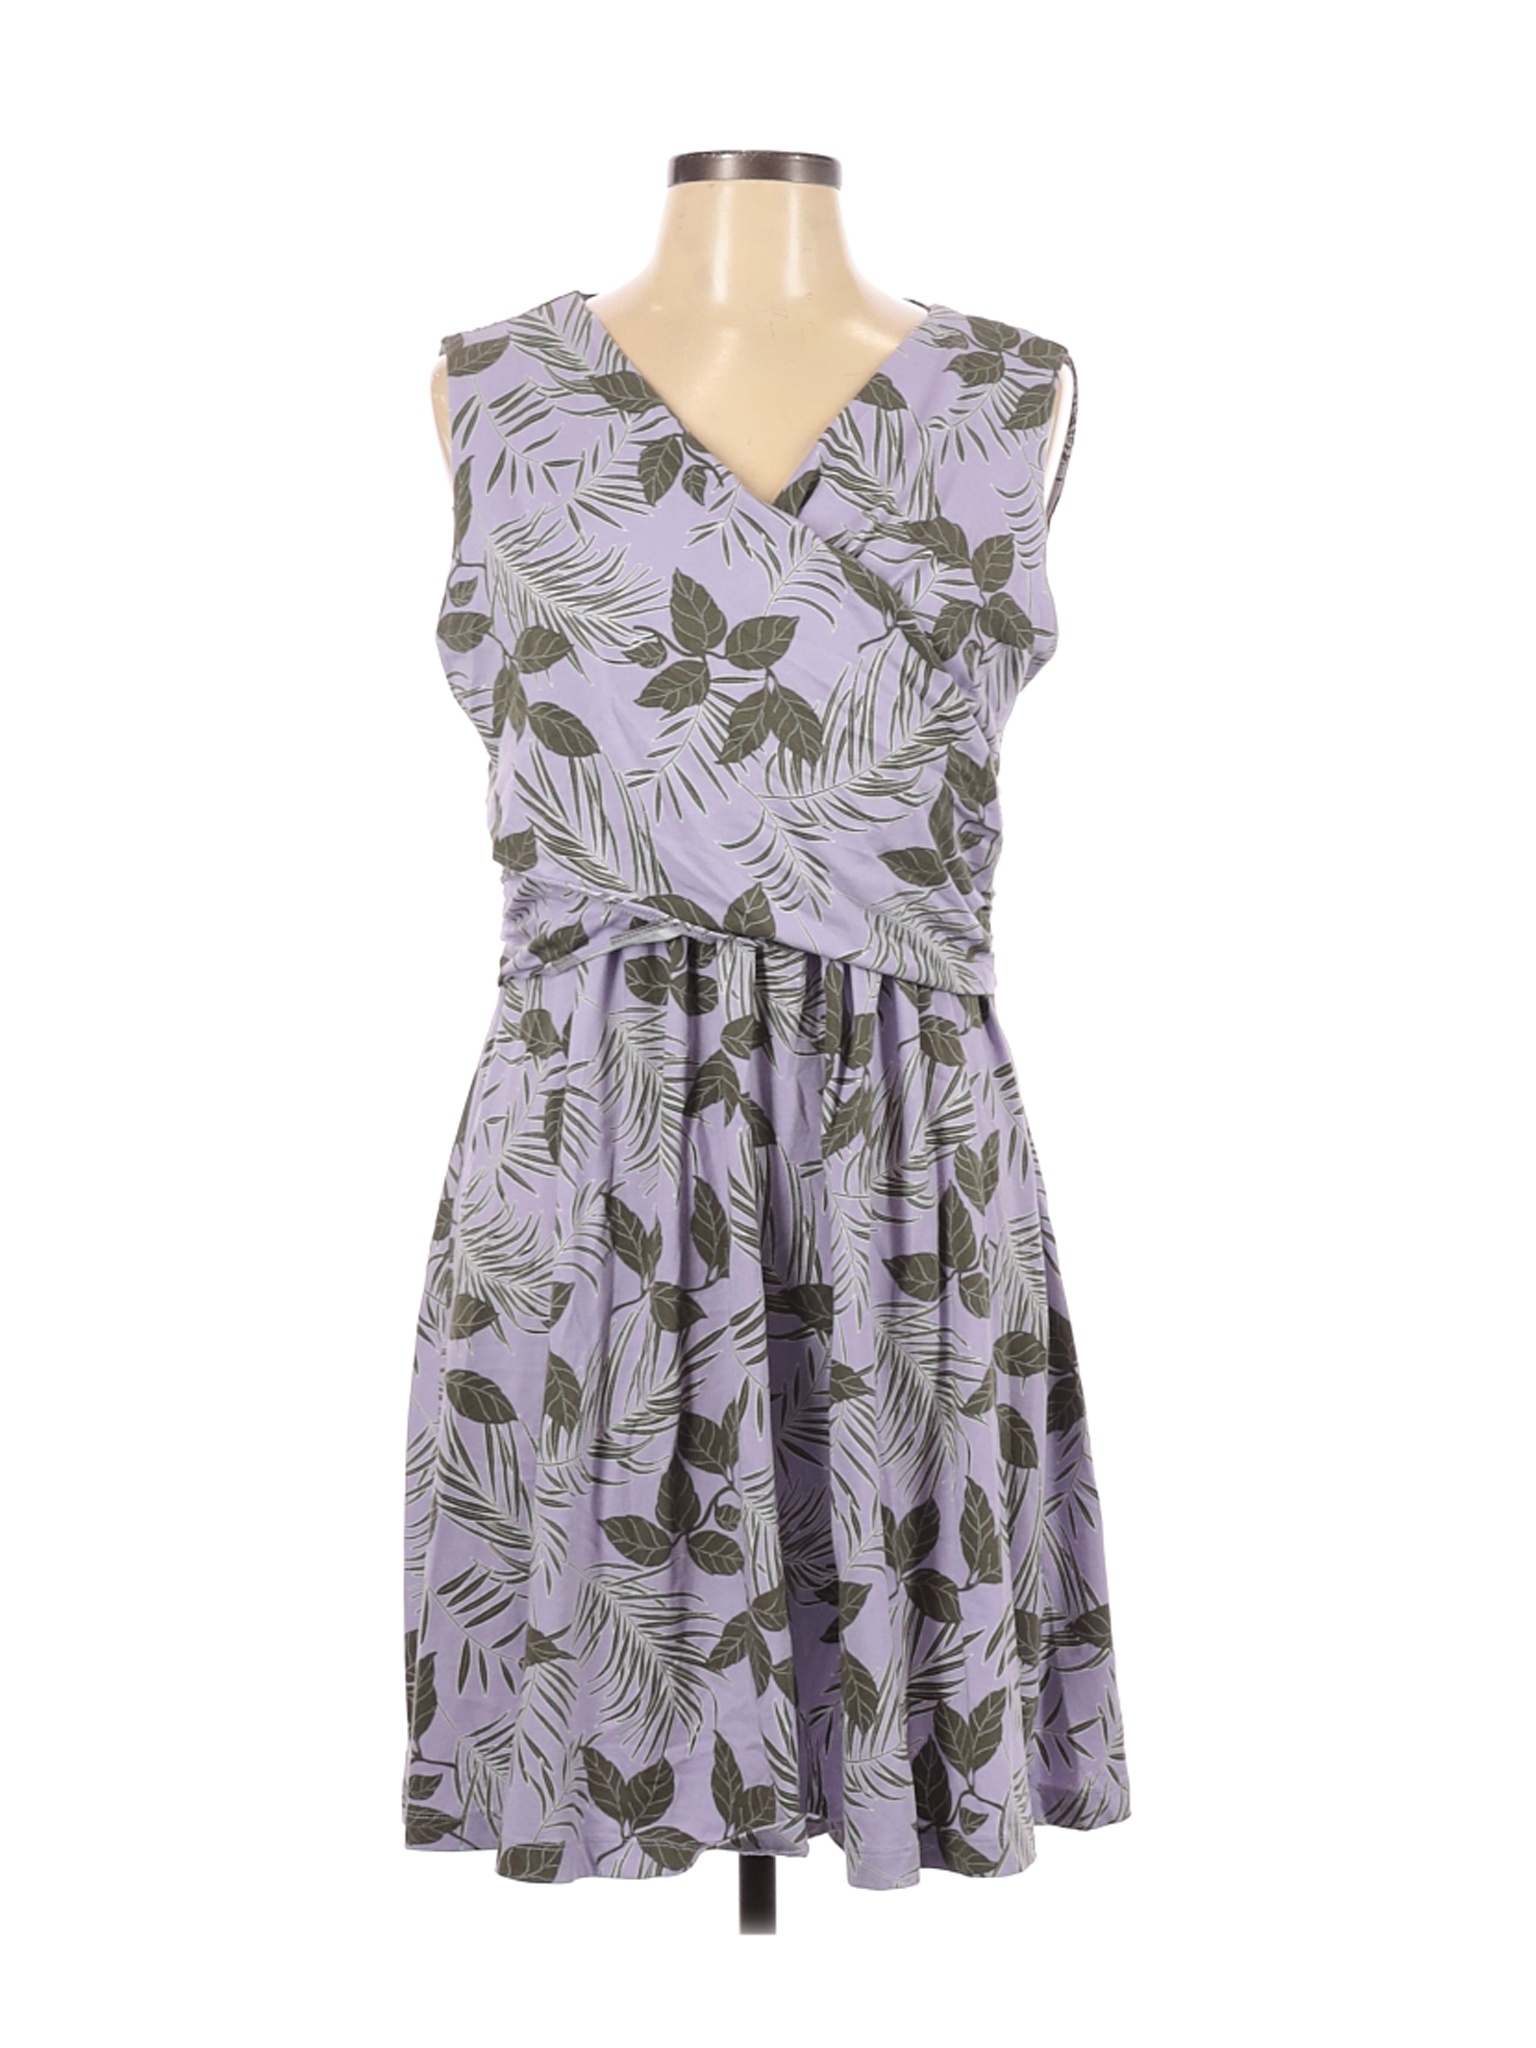 Lands' End Women Purple Casual Dress L | eBay